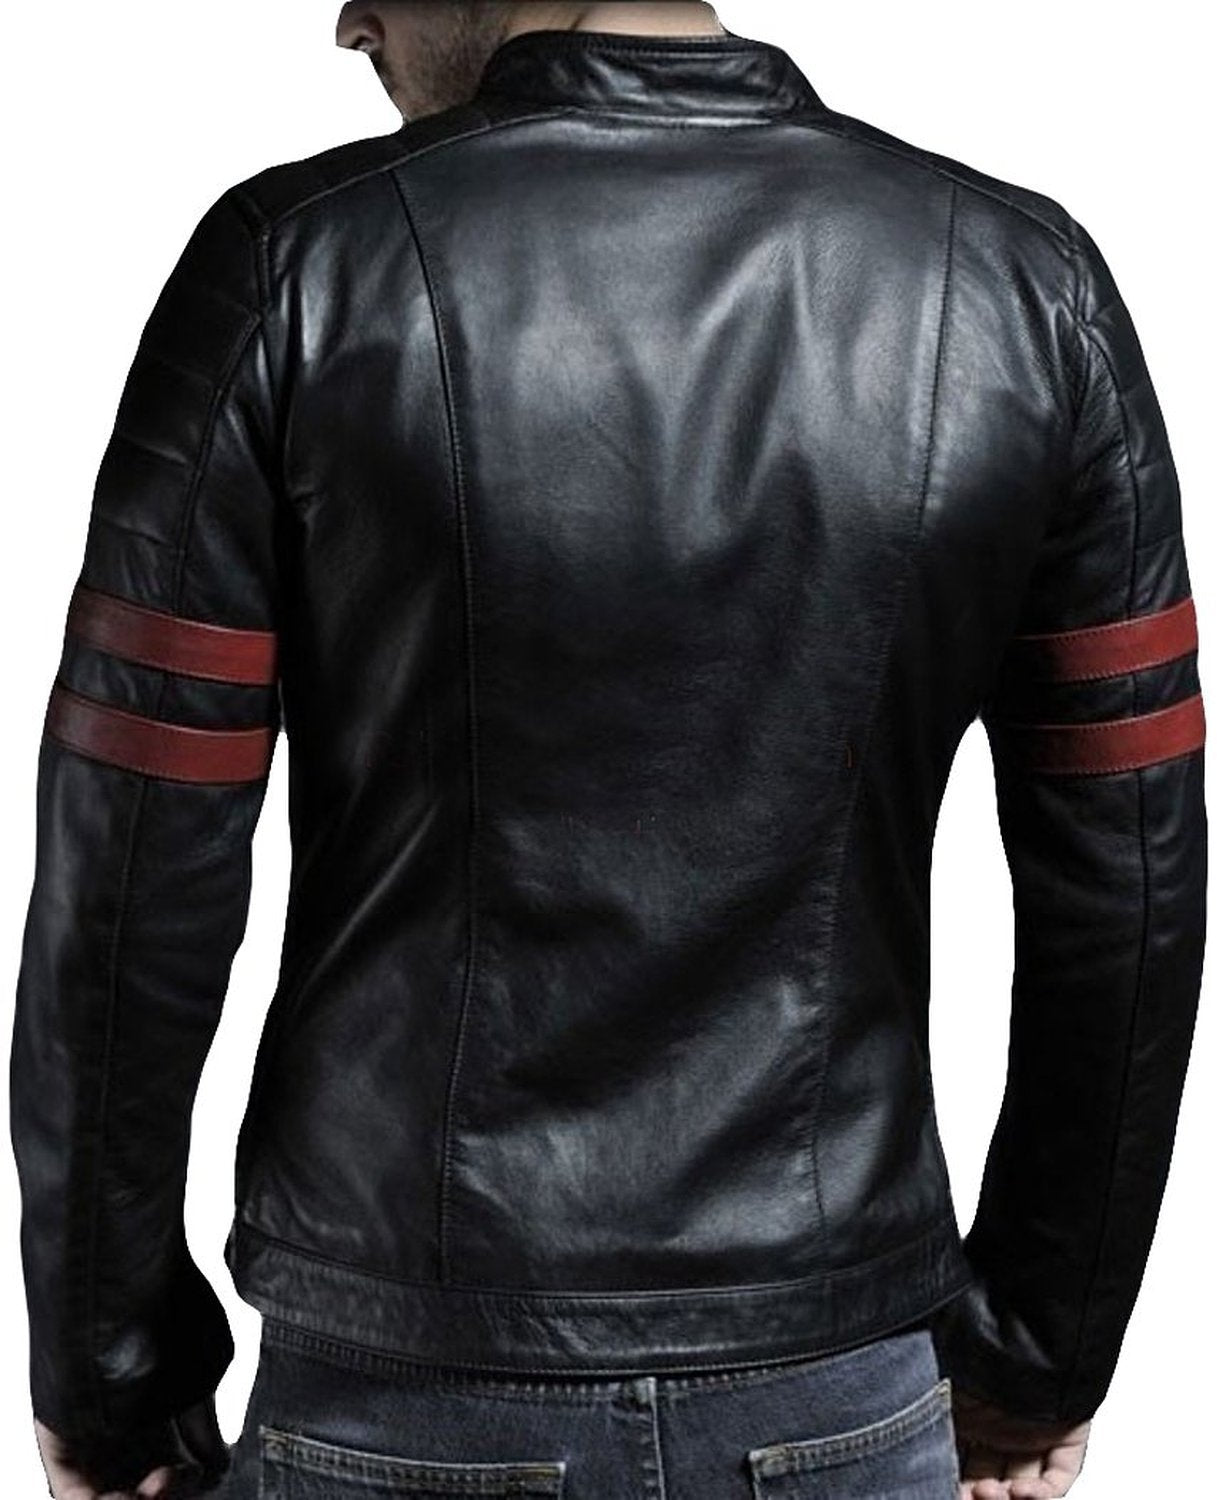 Black@leather jacket